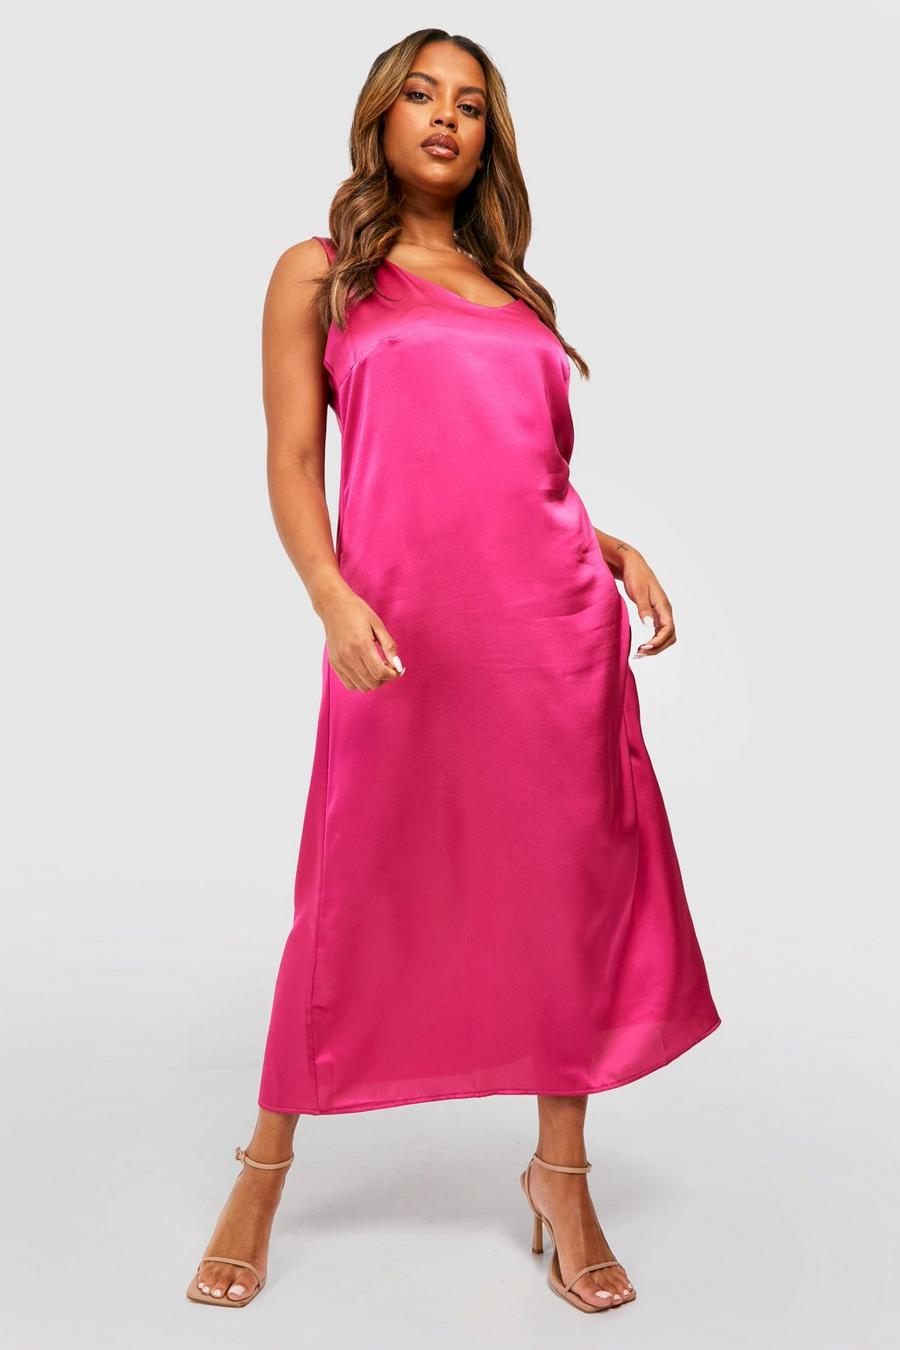 Grande taille - Robe nuisette satinée à bretelles épaisses, Hot pink image number 1